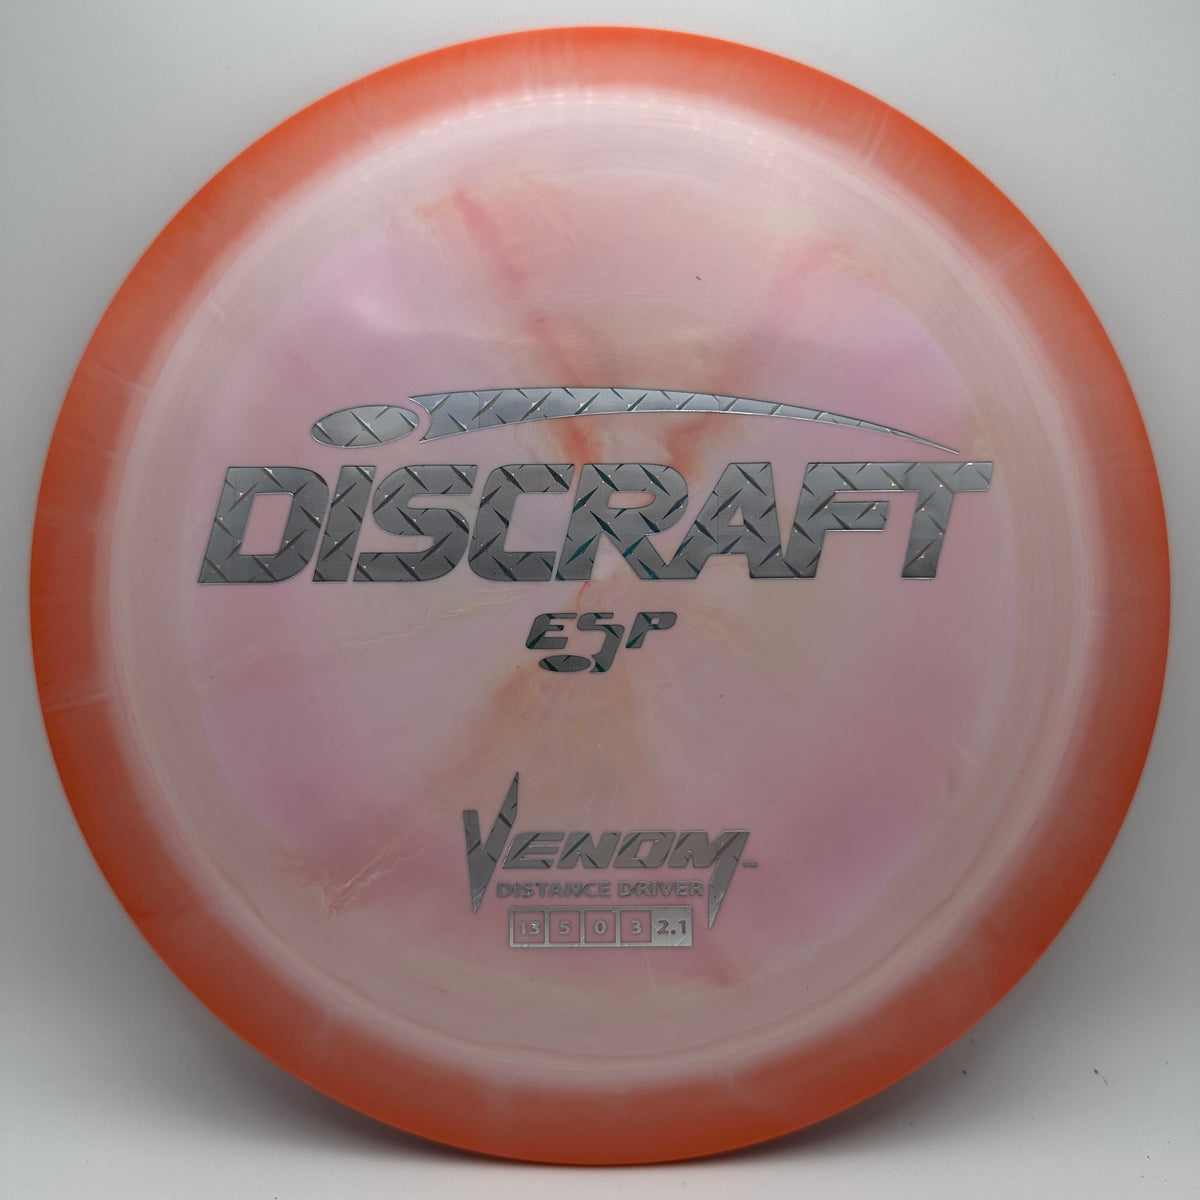 Discraft Venom - ESP